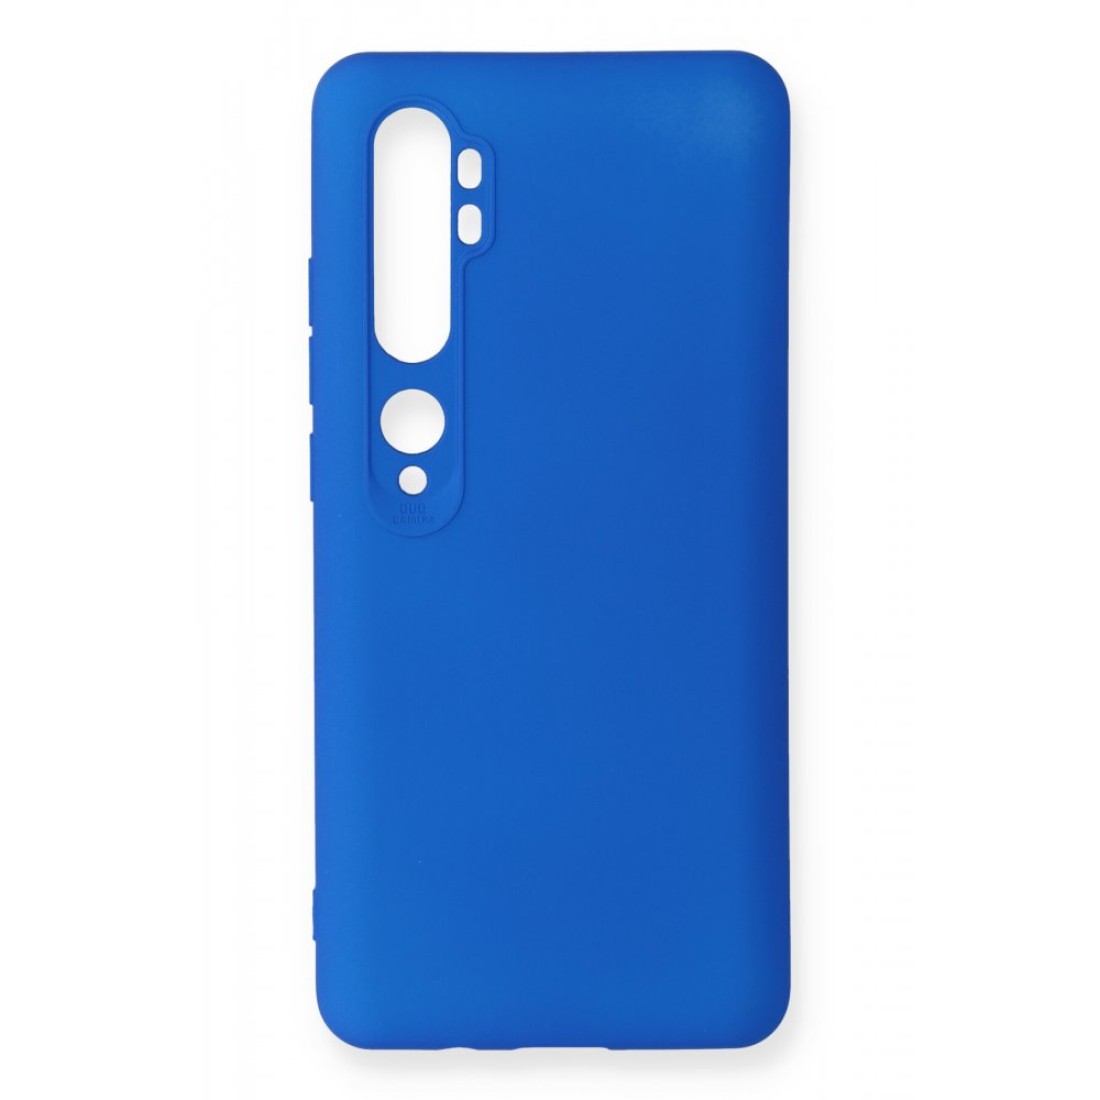 Xiaomi Mi Note 10 Kılıf Premium Rubber Silikon - Mavi